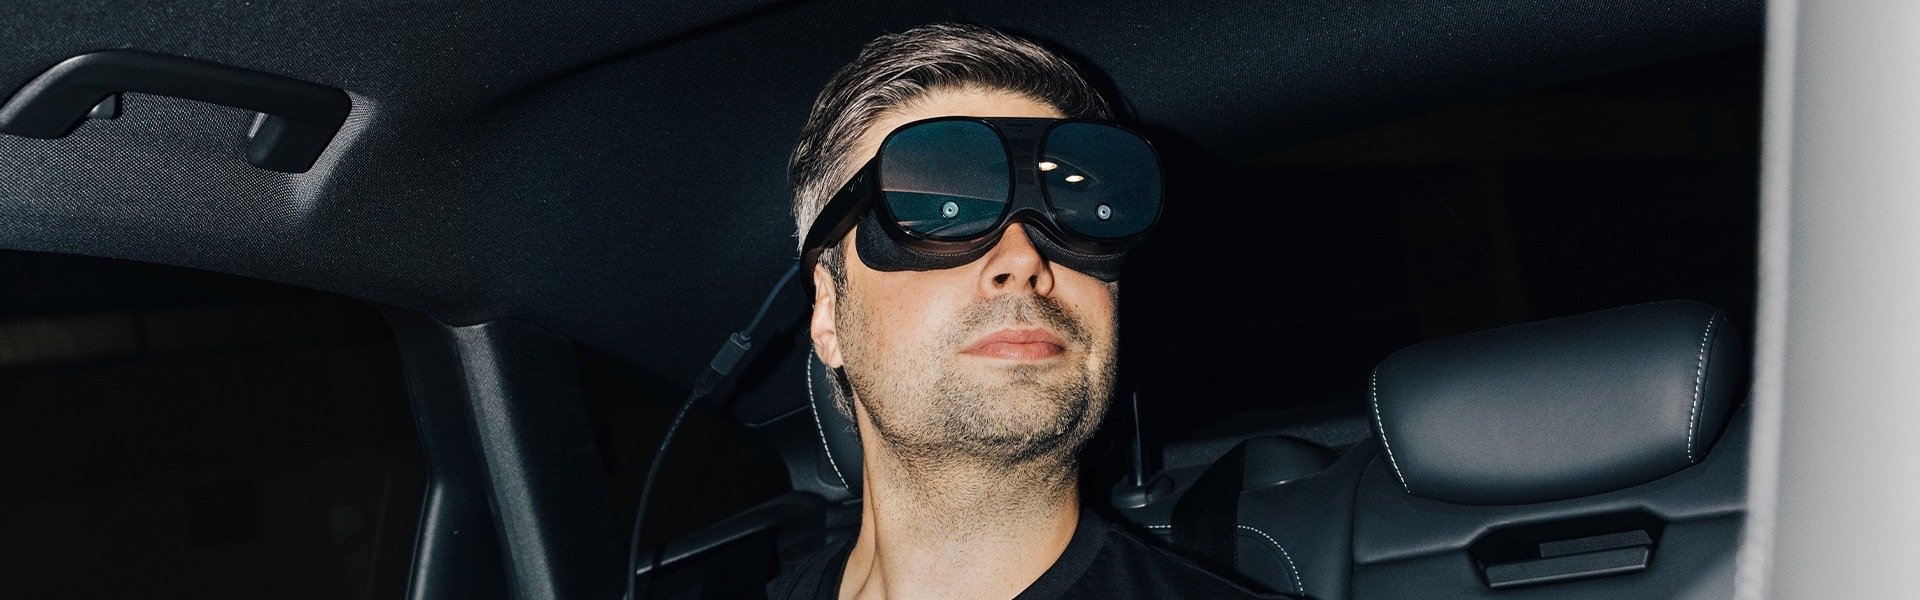 Nils Wollny sedi na zadnjem sedežu vozila Audi in nosi očala za navidezno resničnost.